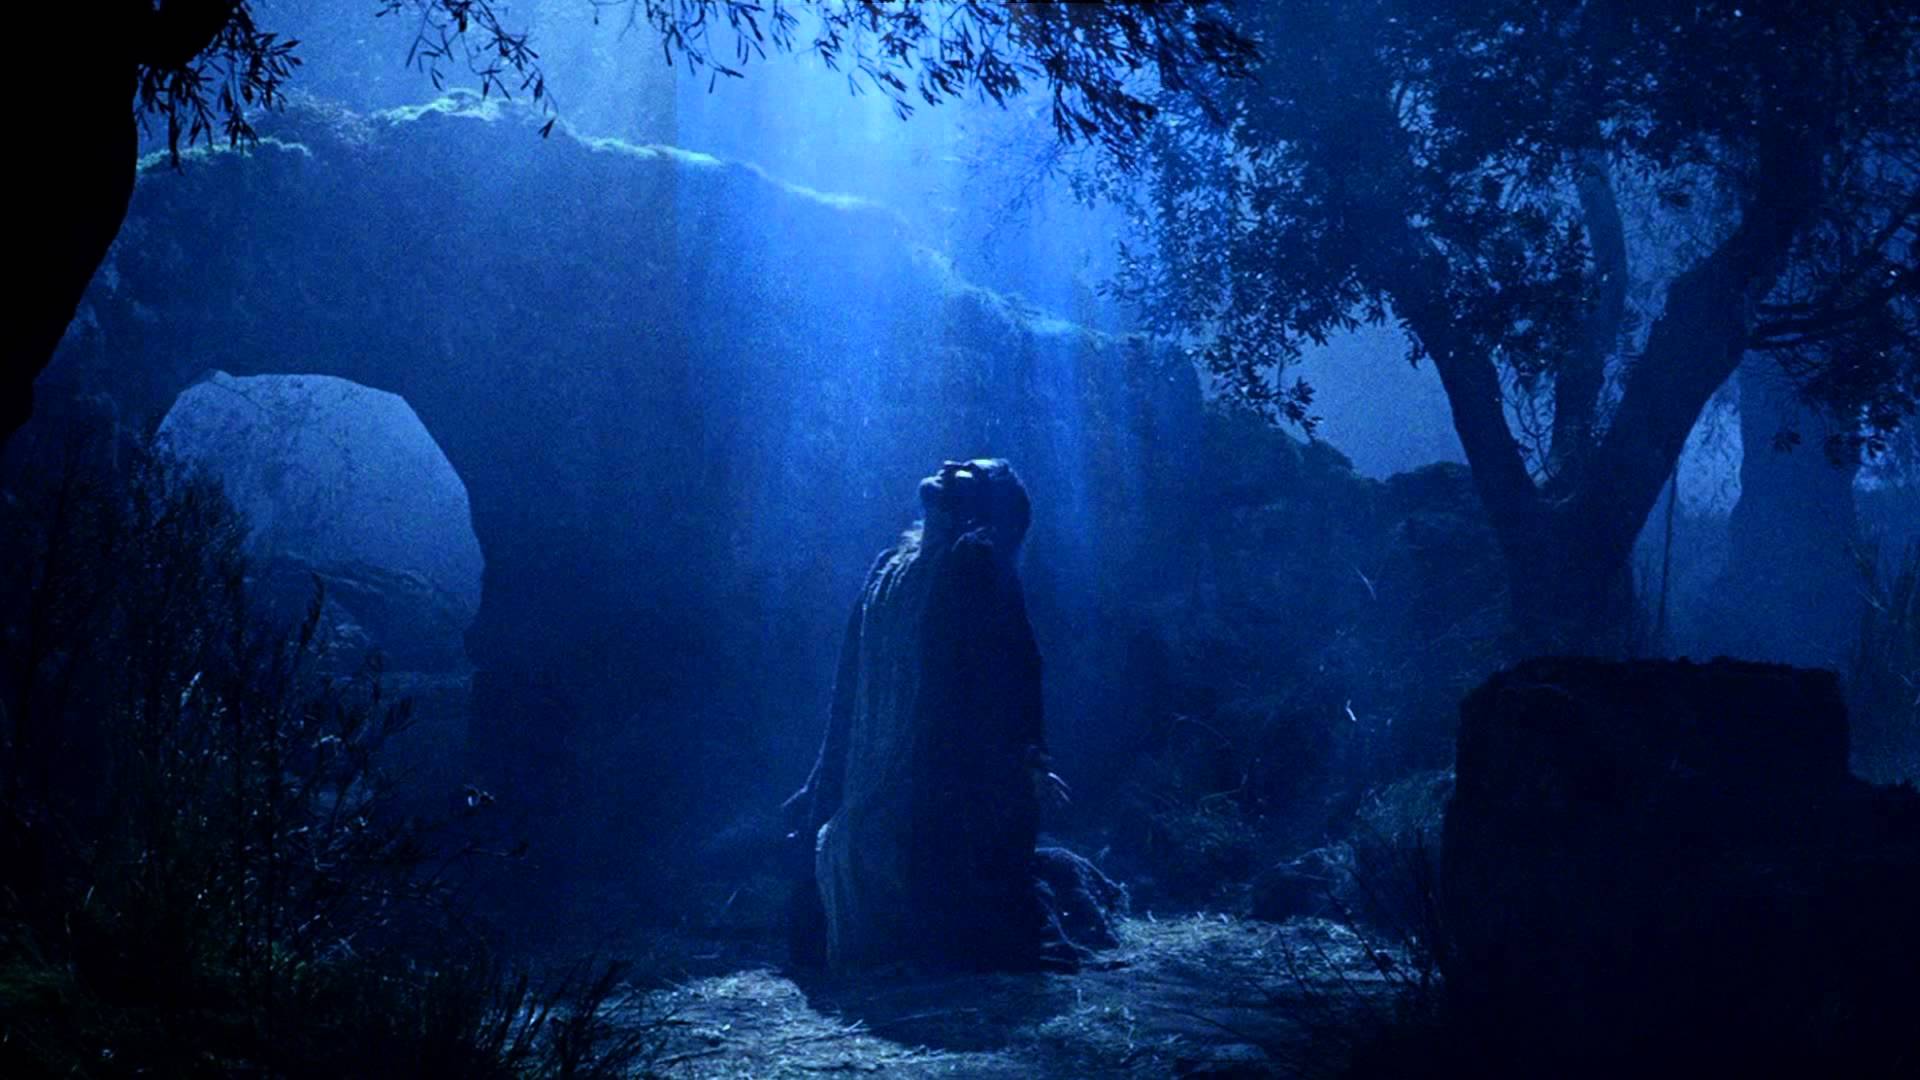 Jesus in the garden of Gethsemane.